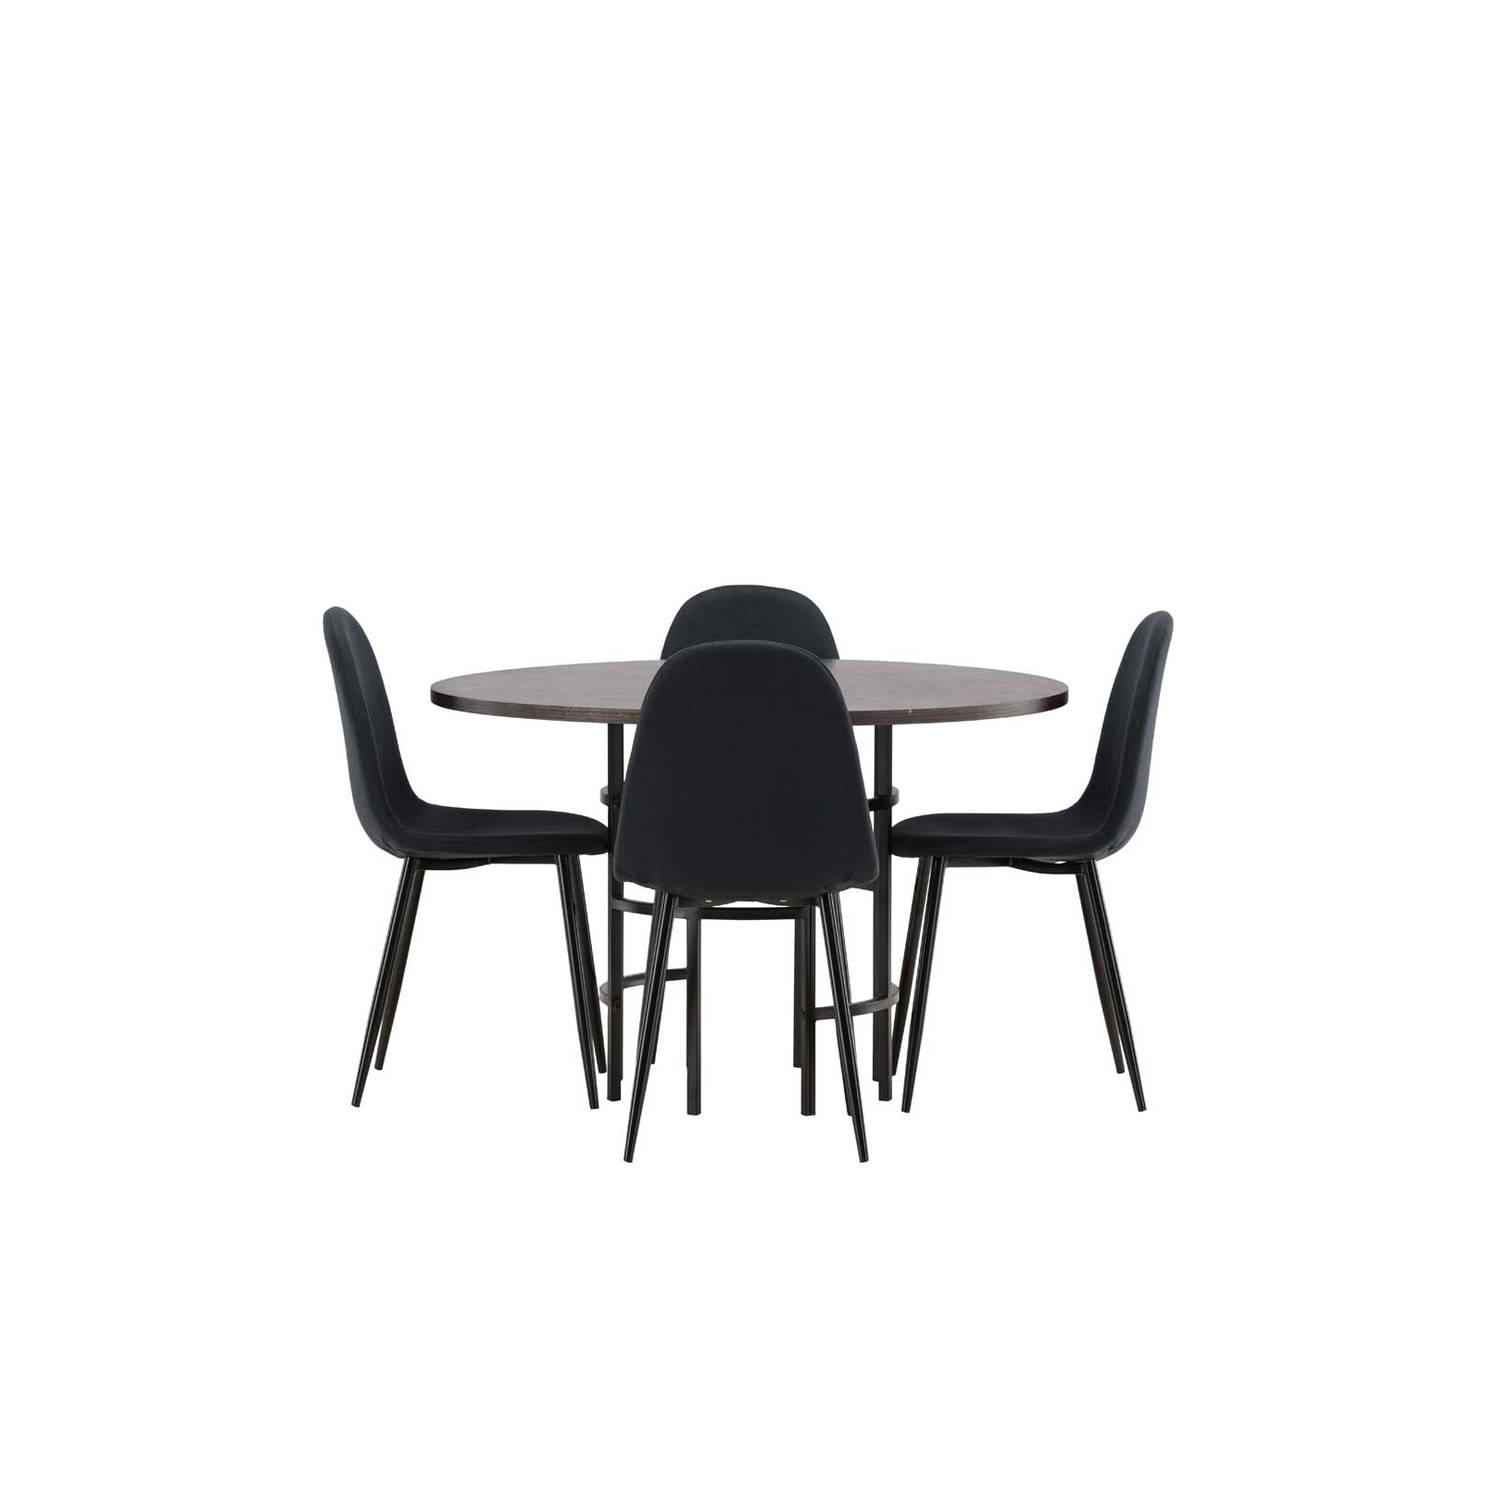 Copenhagen eethoek tafel mokka en 4 Polar stoelen zwart.